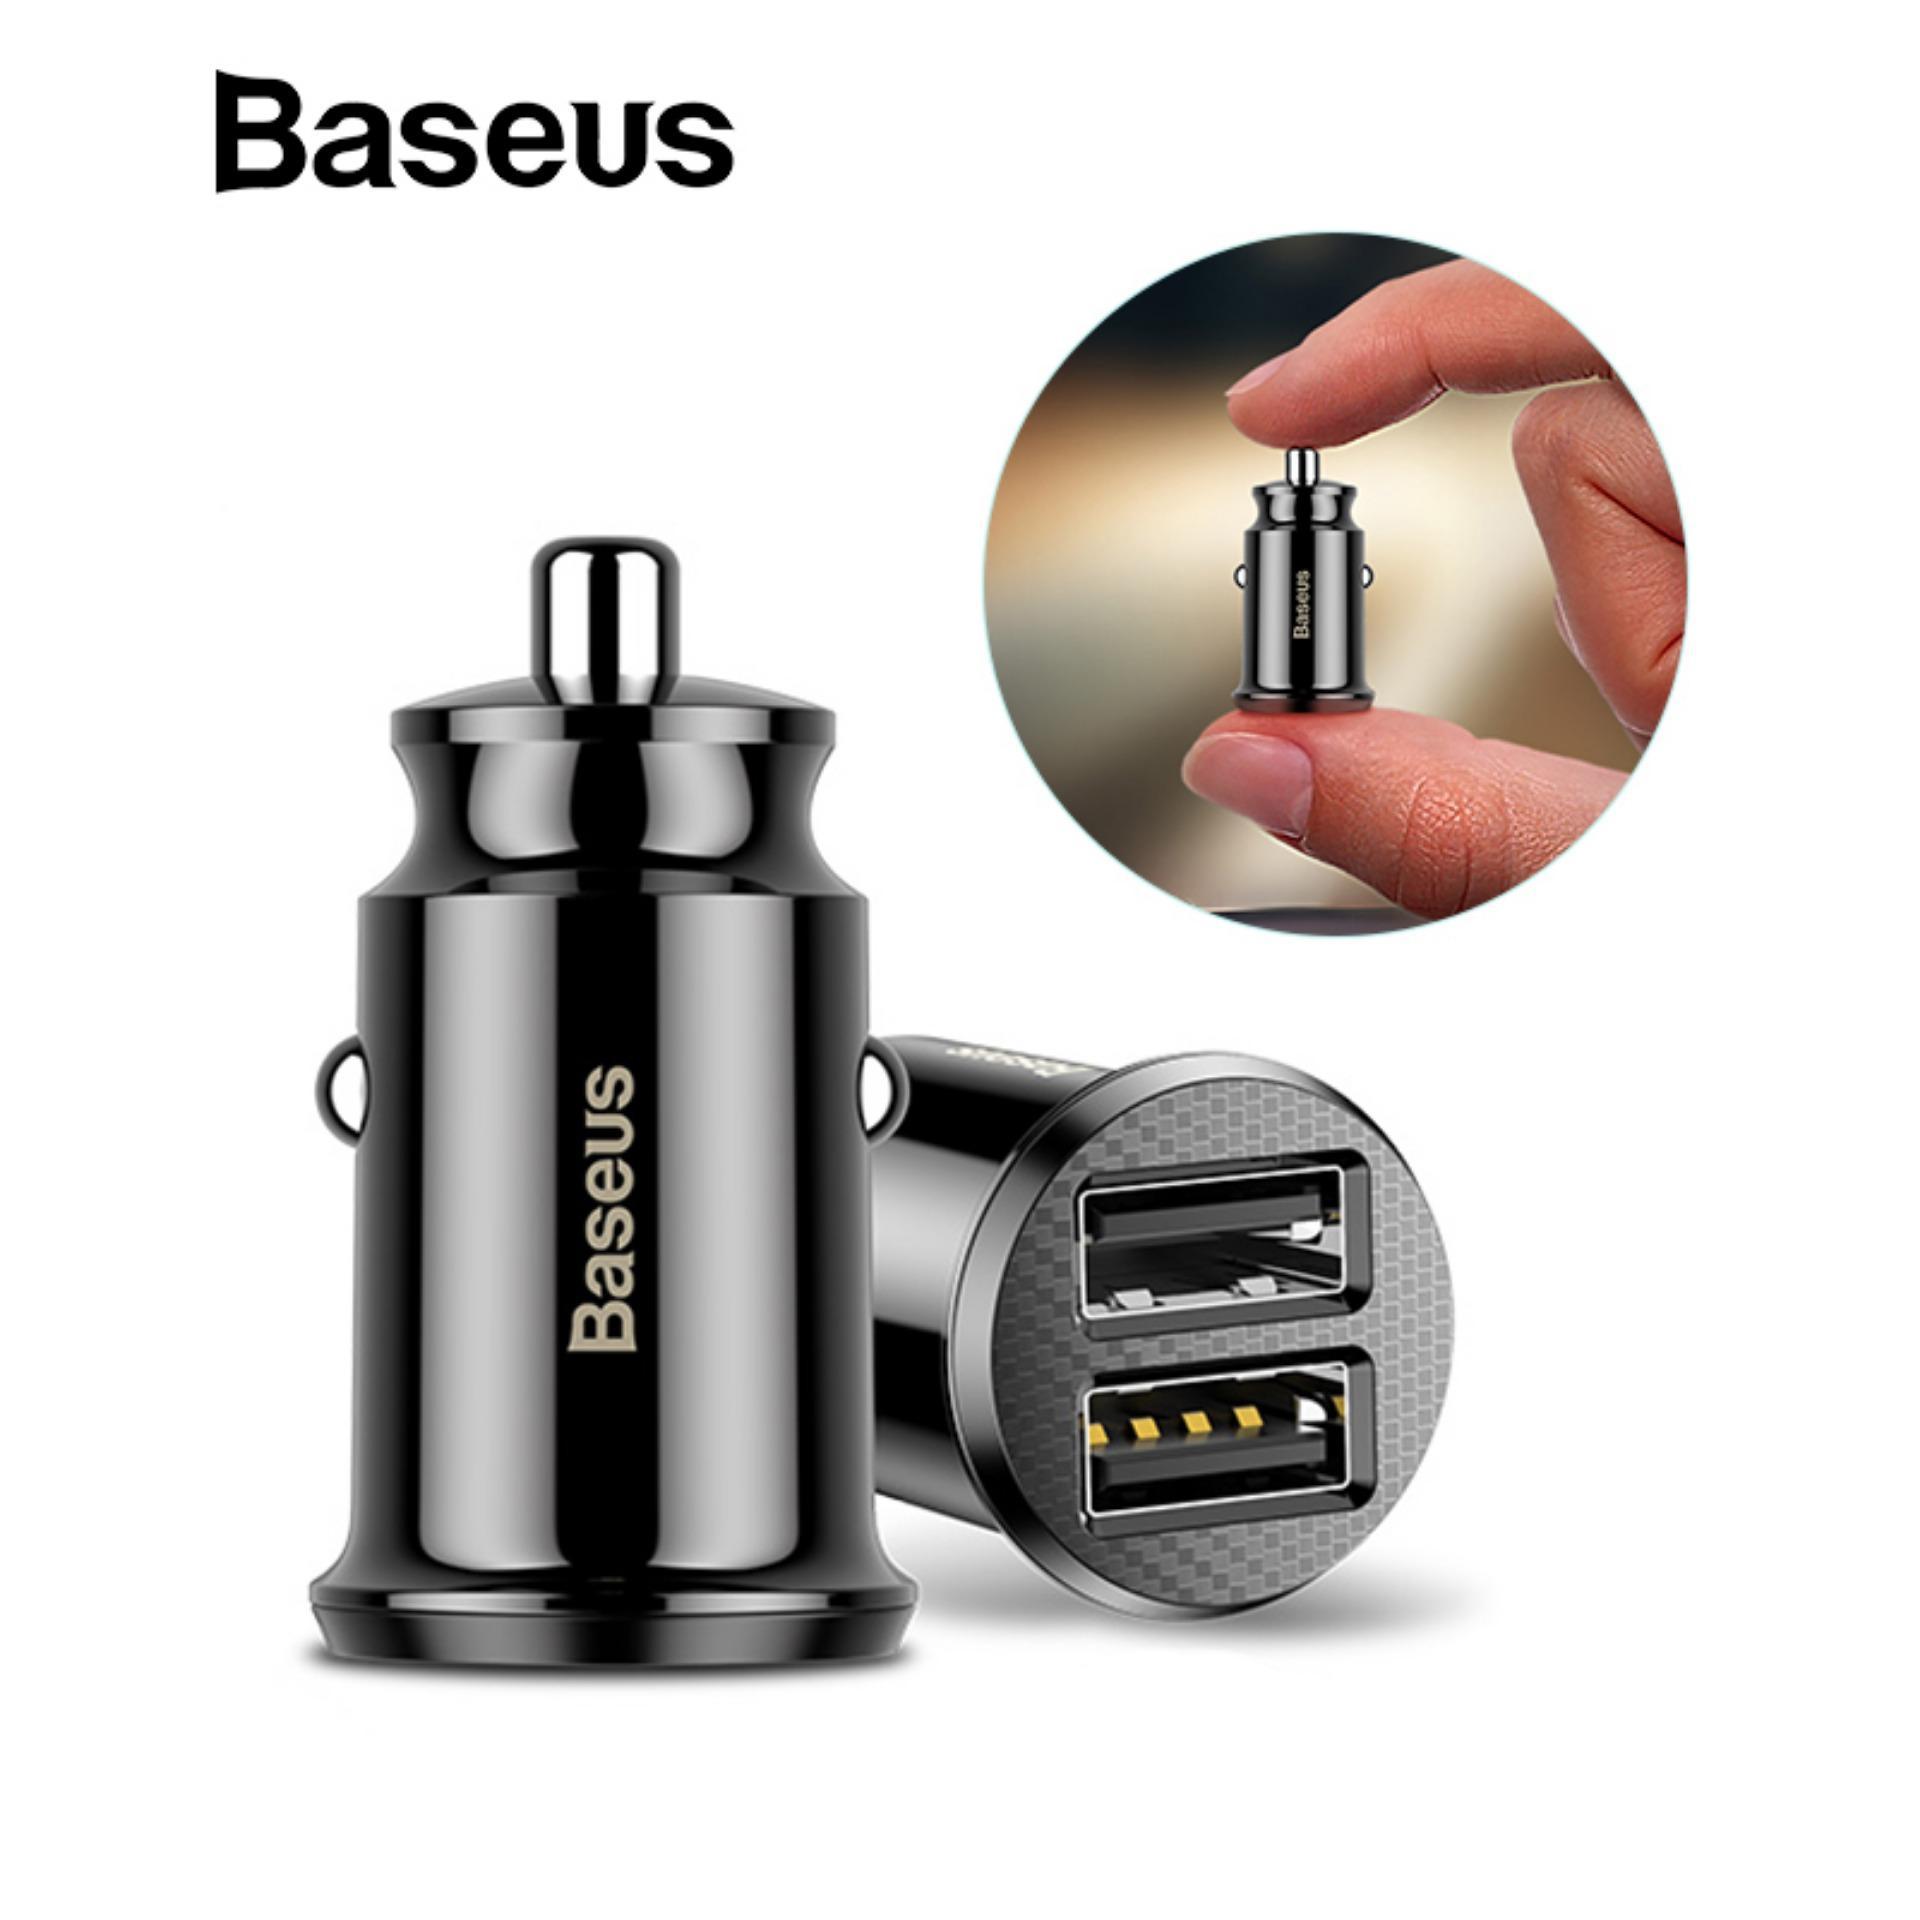 Baseus Mini ที่ชาร์จในรถ Dual USB Car Charger 2 USB 3.1A (ของแท้ 100 %) อุปกรณ์ชาร์จมือถือในรถ ที่ชาร์จแบตรถ ที่ชาร์จไฟในรถยนต์ ใช้กับ มือถือ แท็บเล็ต และ อุปกรณ์อิเล็กทรอนิกส์